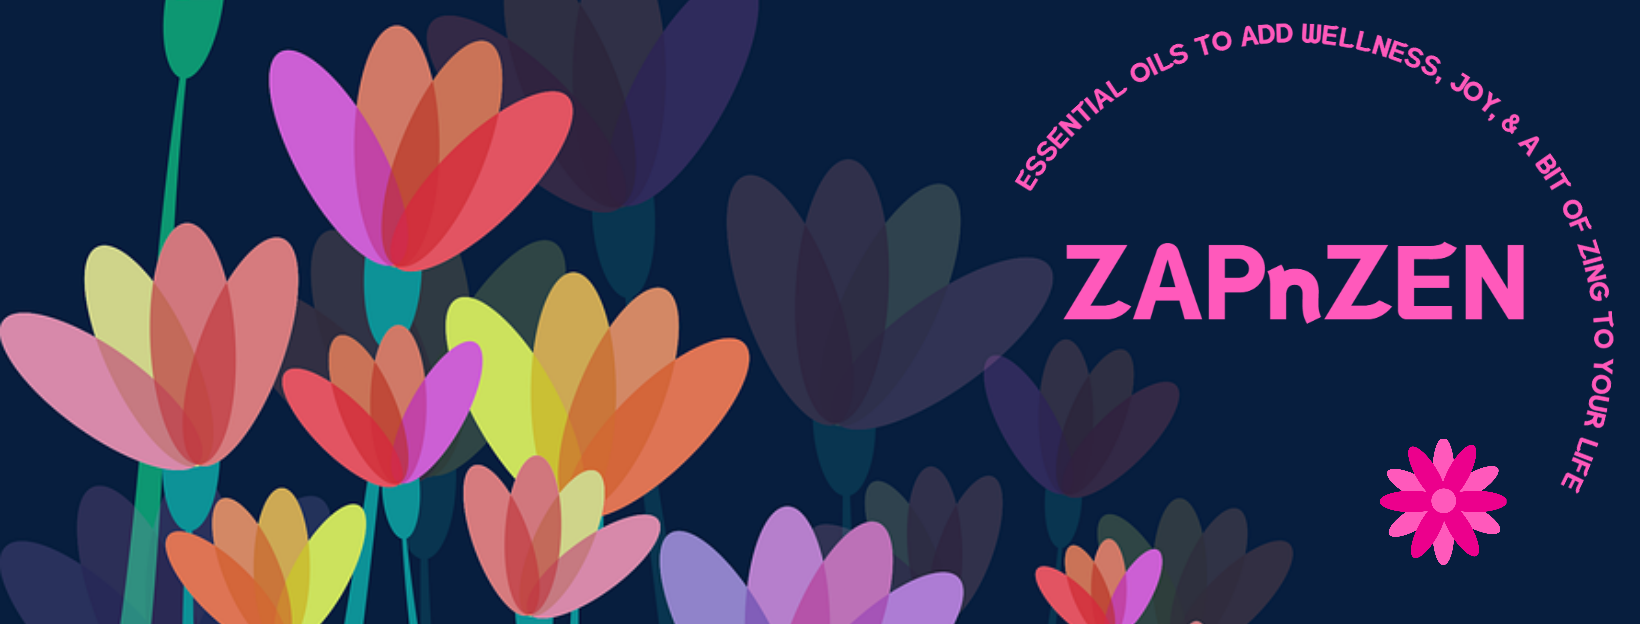 ZAPnZEN = essential oils to add wellness, joy & a bit of zing to your life